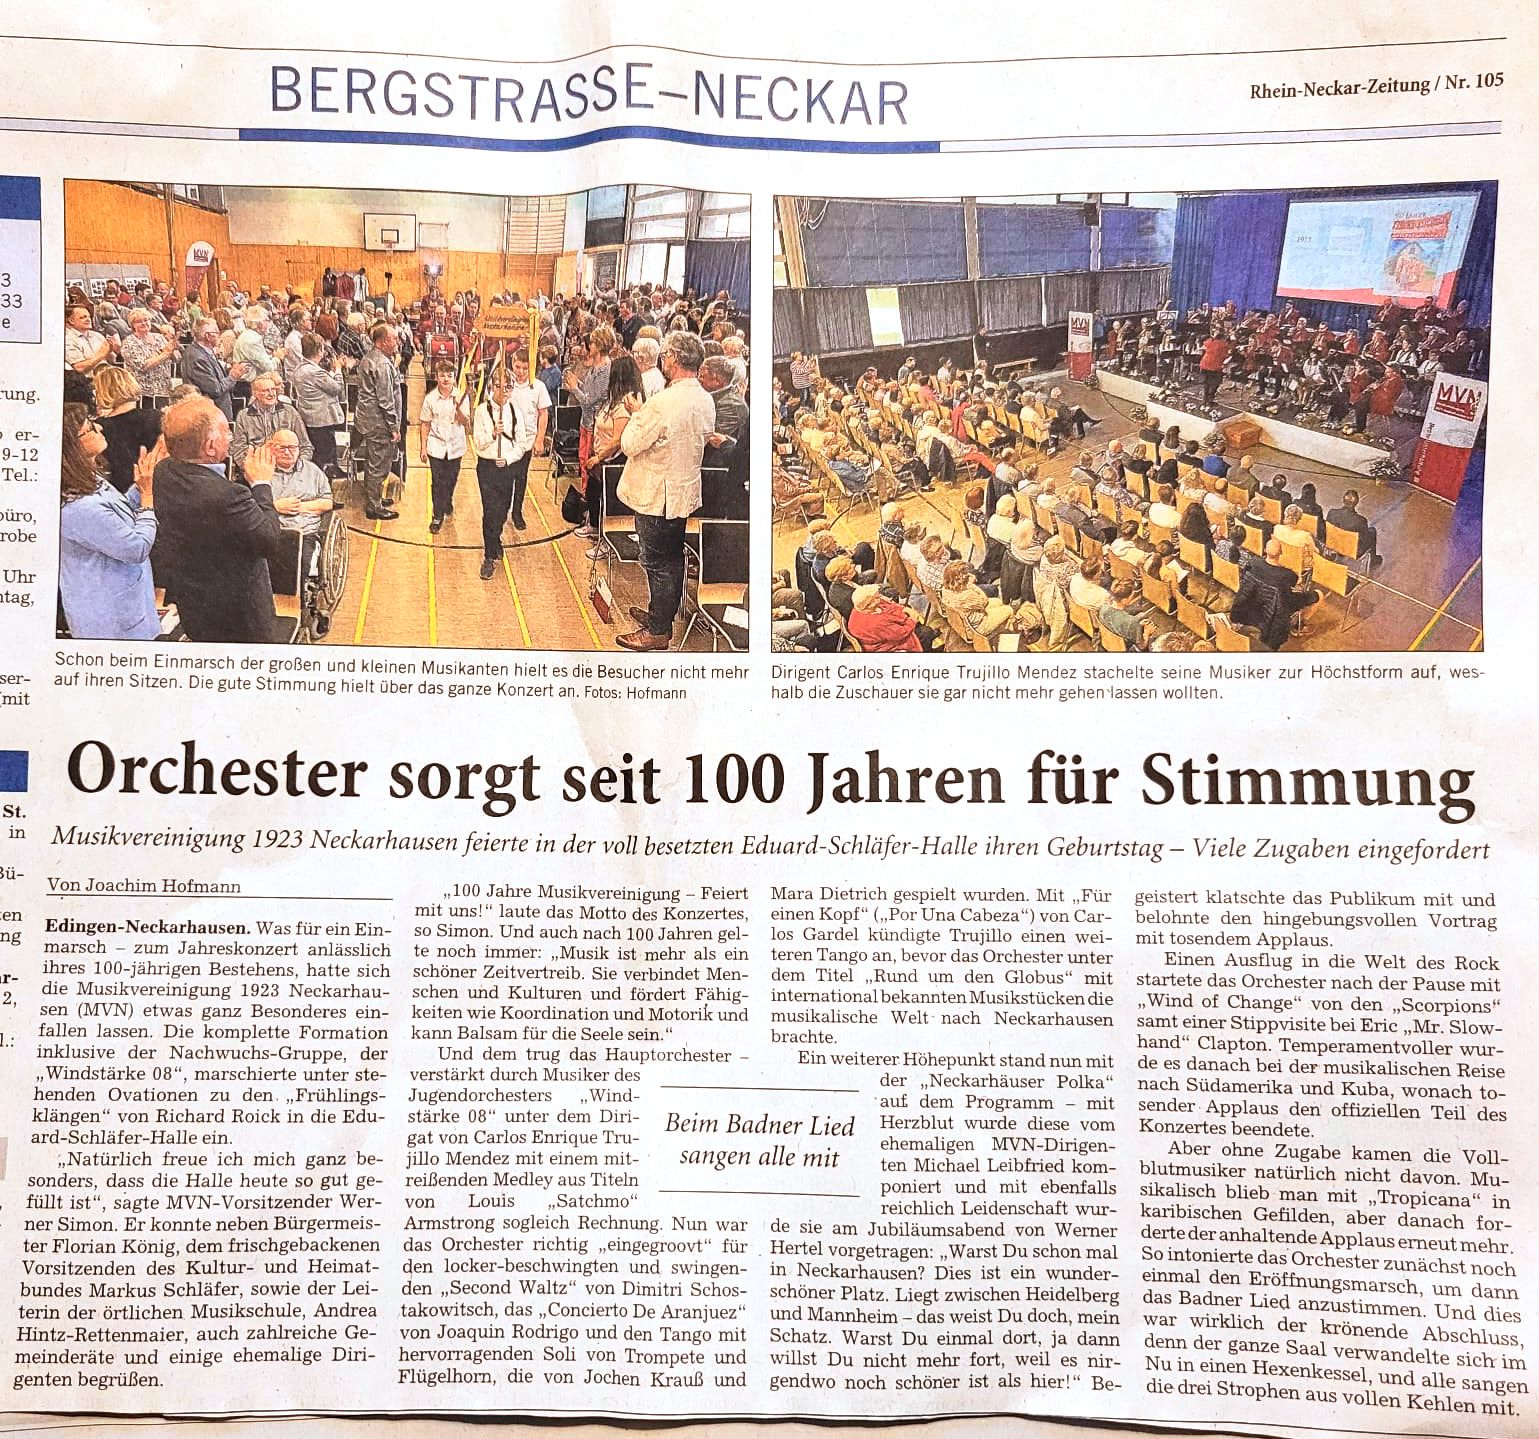 Orchester sorgt seit 100 Jahren für Stimmung